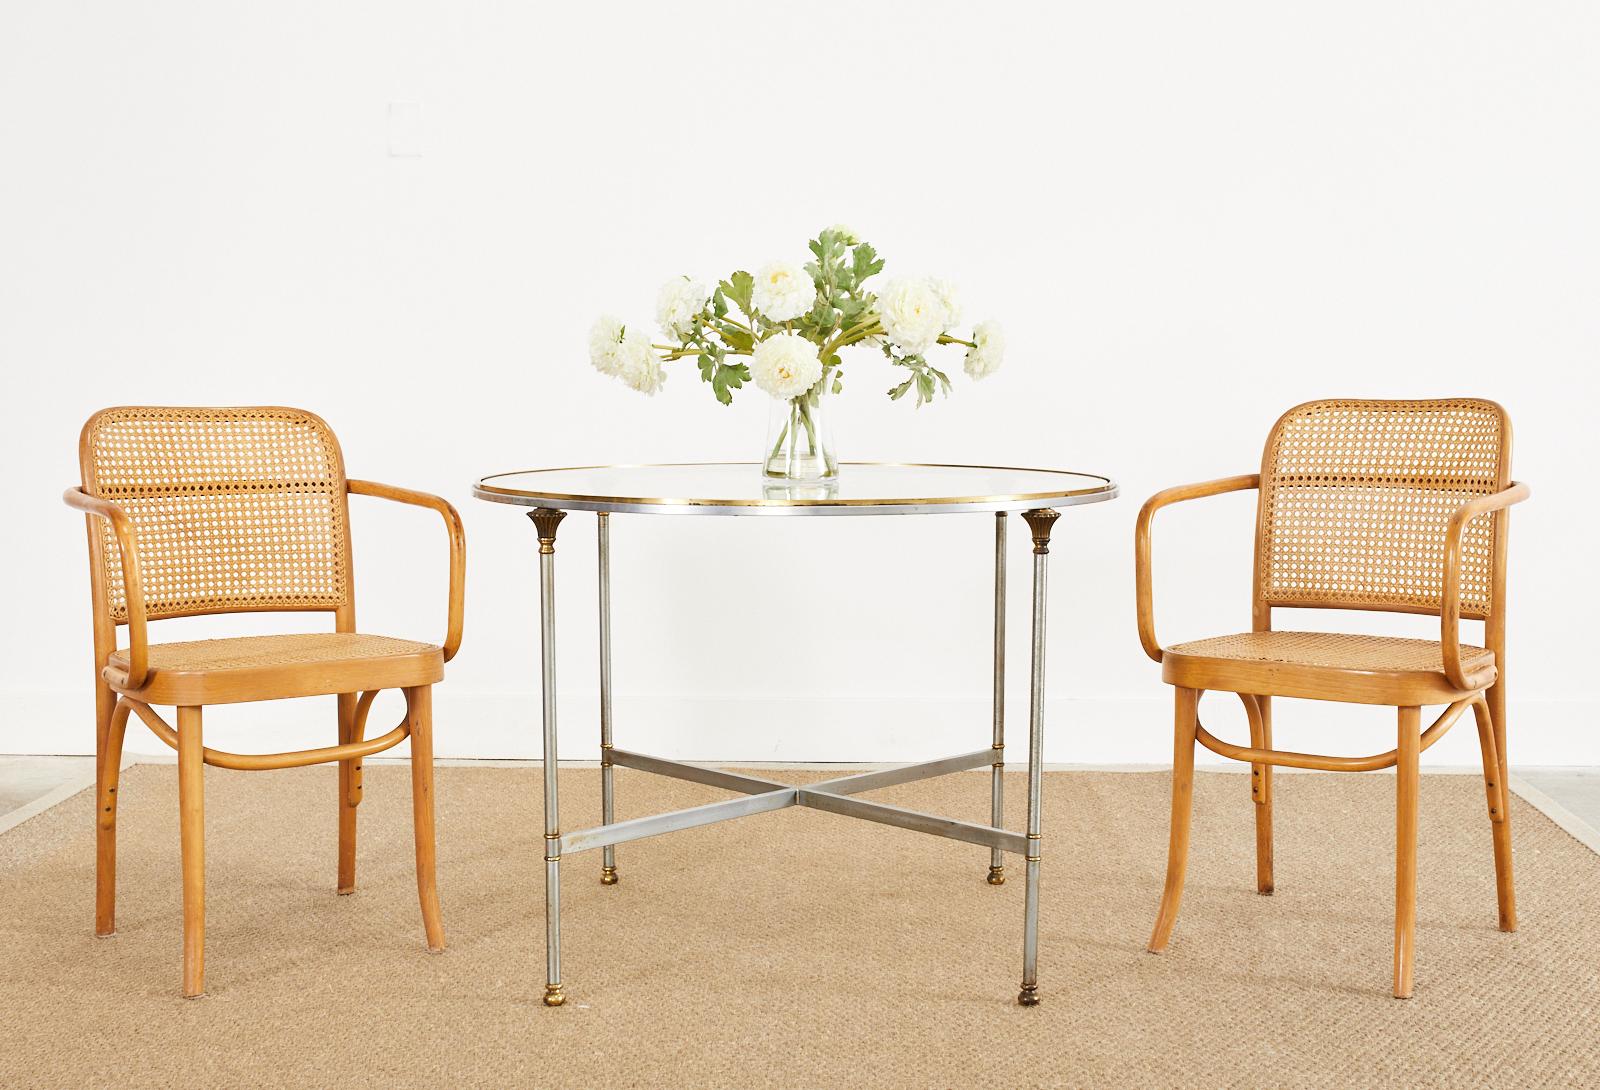 Ensemble de quatre fauteuils en hêtre courbé de style moderne du milieu du siècle, conçu par les architectes autrichiens Josef Frank et Josef Hoffman pour Thonet. Chaque chaise est estampillée fabriquée en Pologne. Les chaises sont dotées d'une